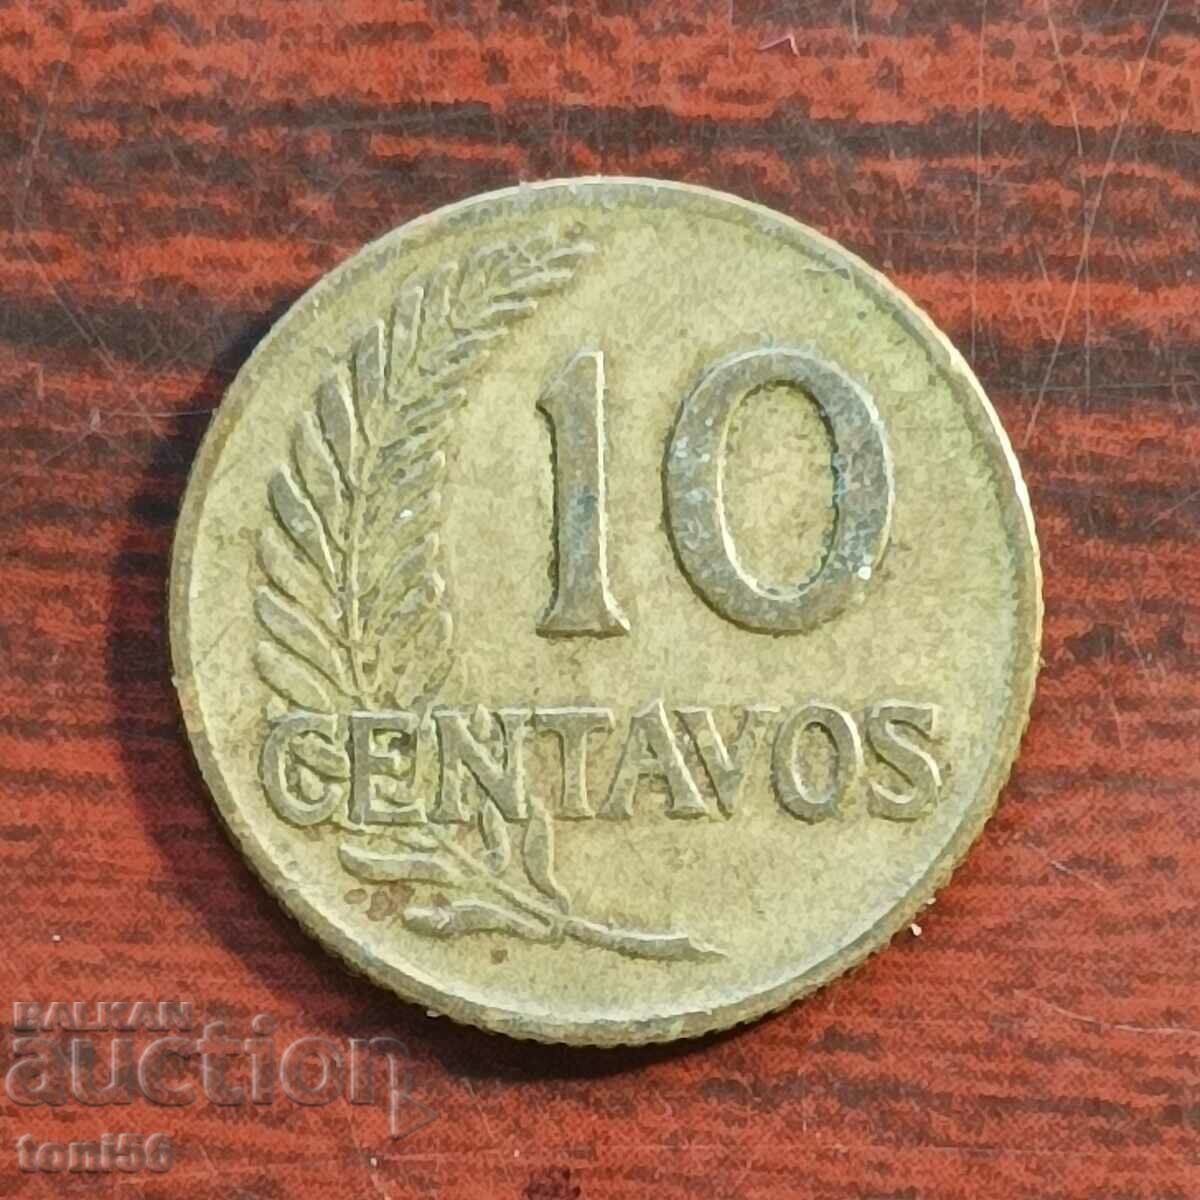 Περού - 10 centavos 1957